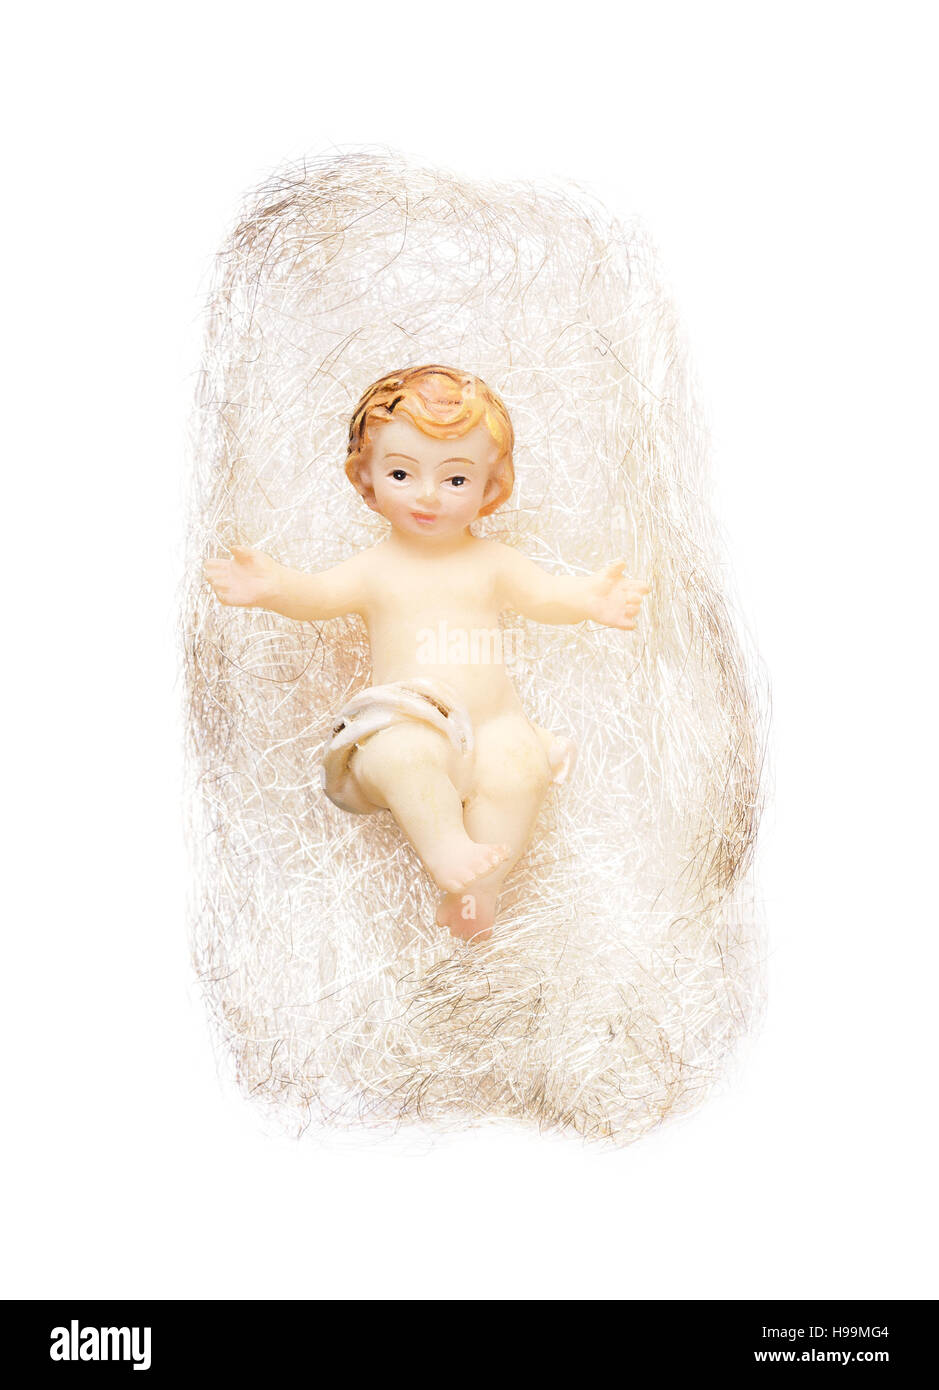 Le Christ enfant du Prince dans les cheveux d'ange sur fond blanc. Jésus enfant artisanal décoration d'arbre de Noël. Banque D'Images